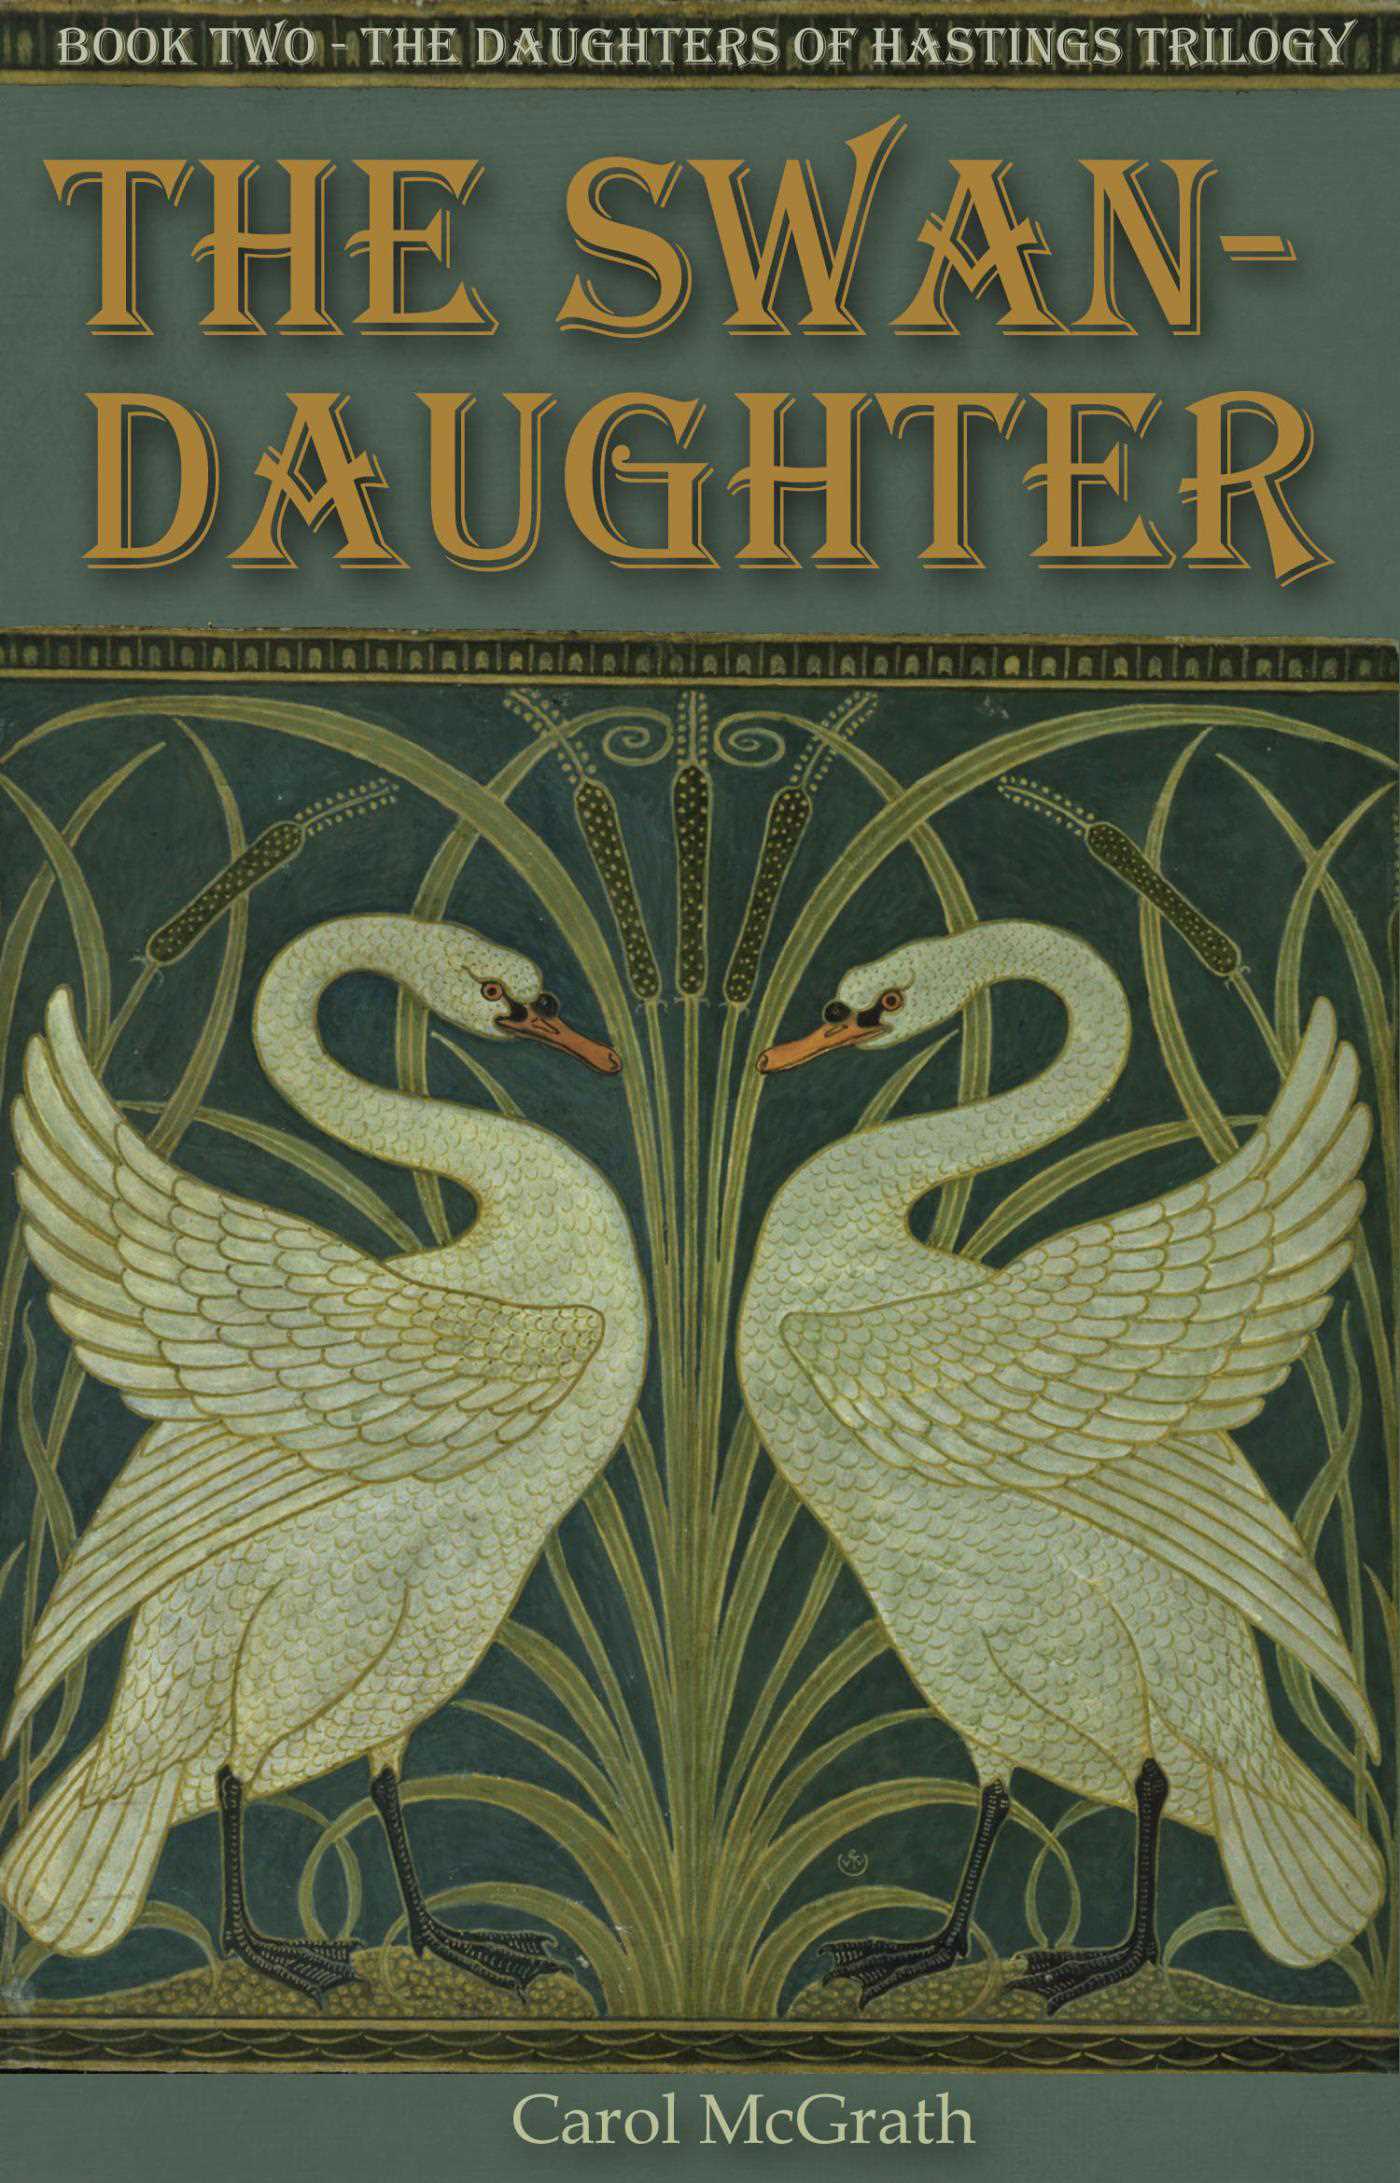 Swan-Daughter